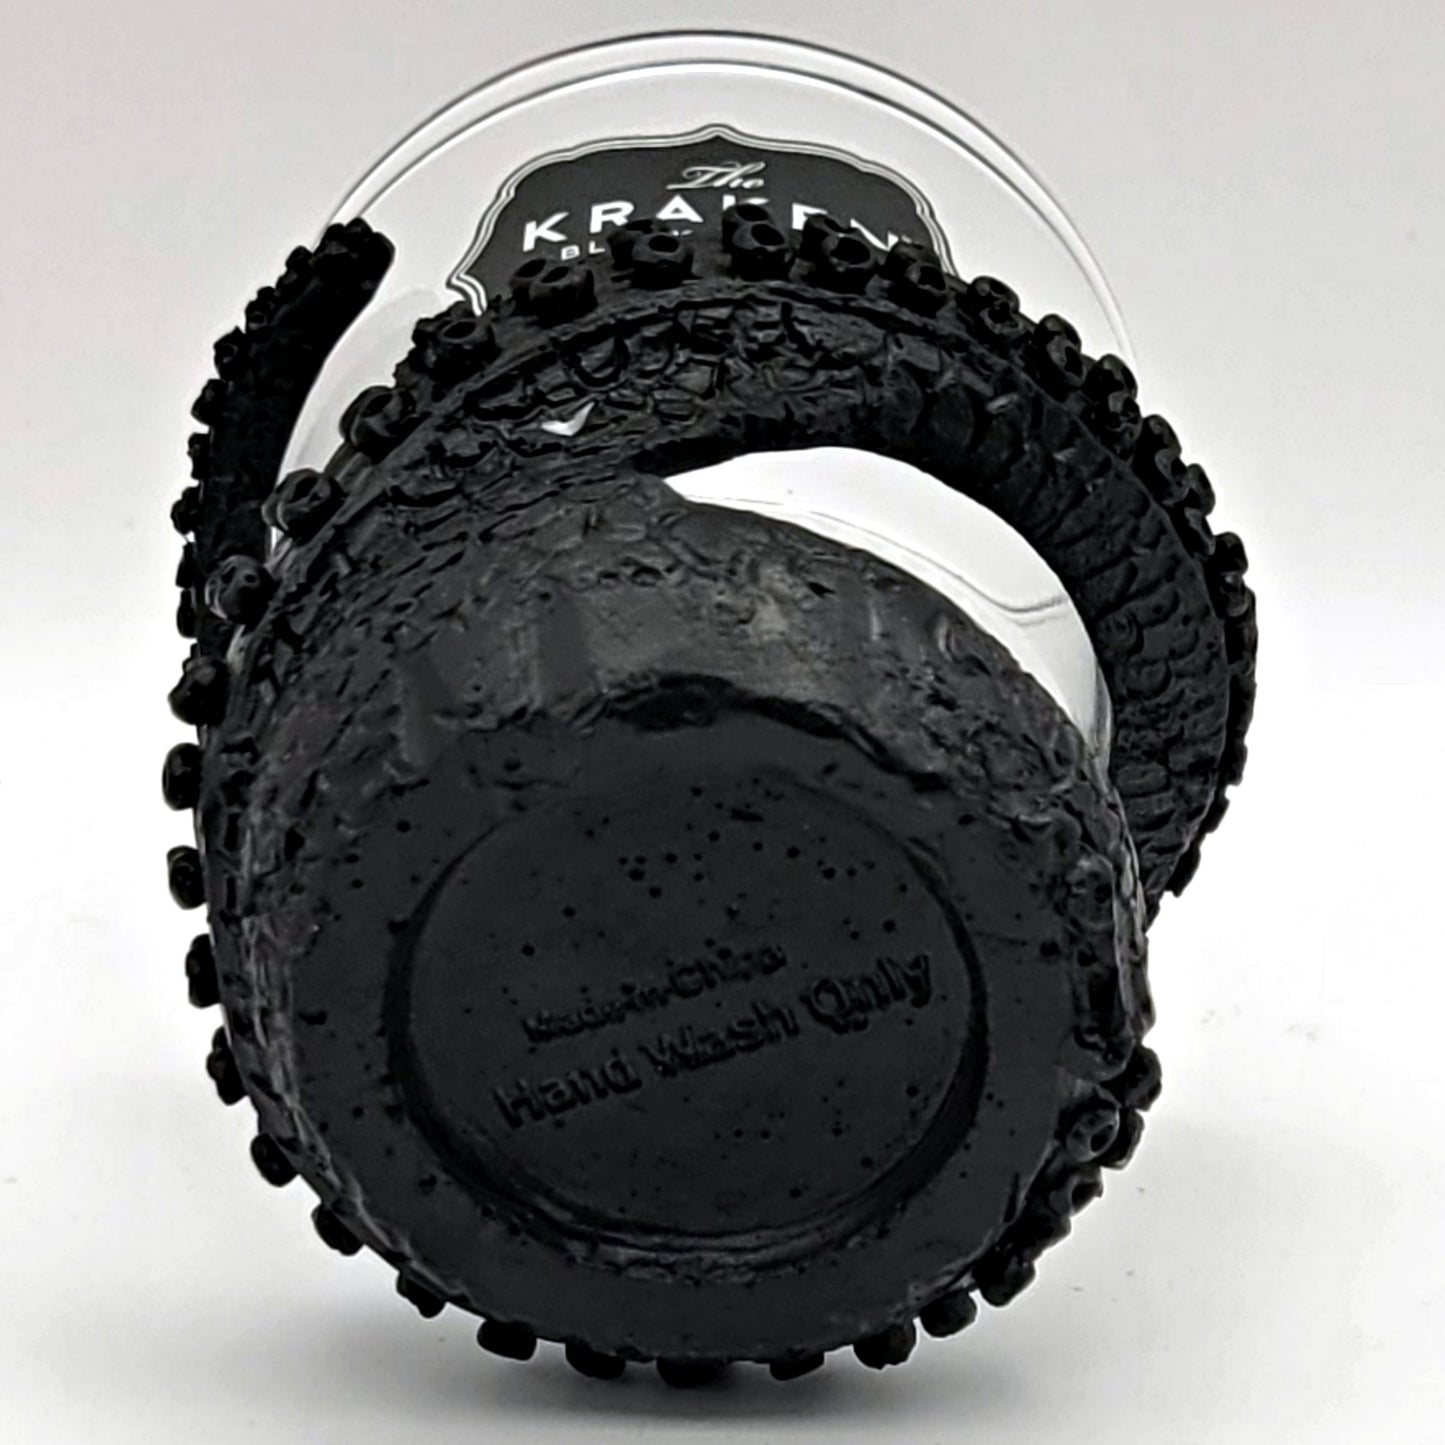 KRAKEN Rum Collectible Tentacle Shot Glass